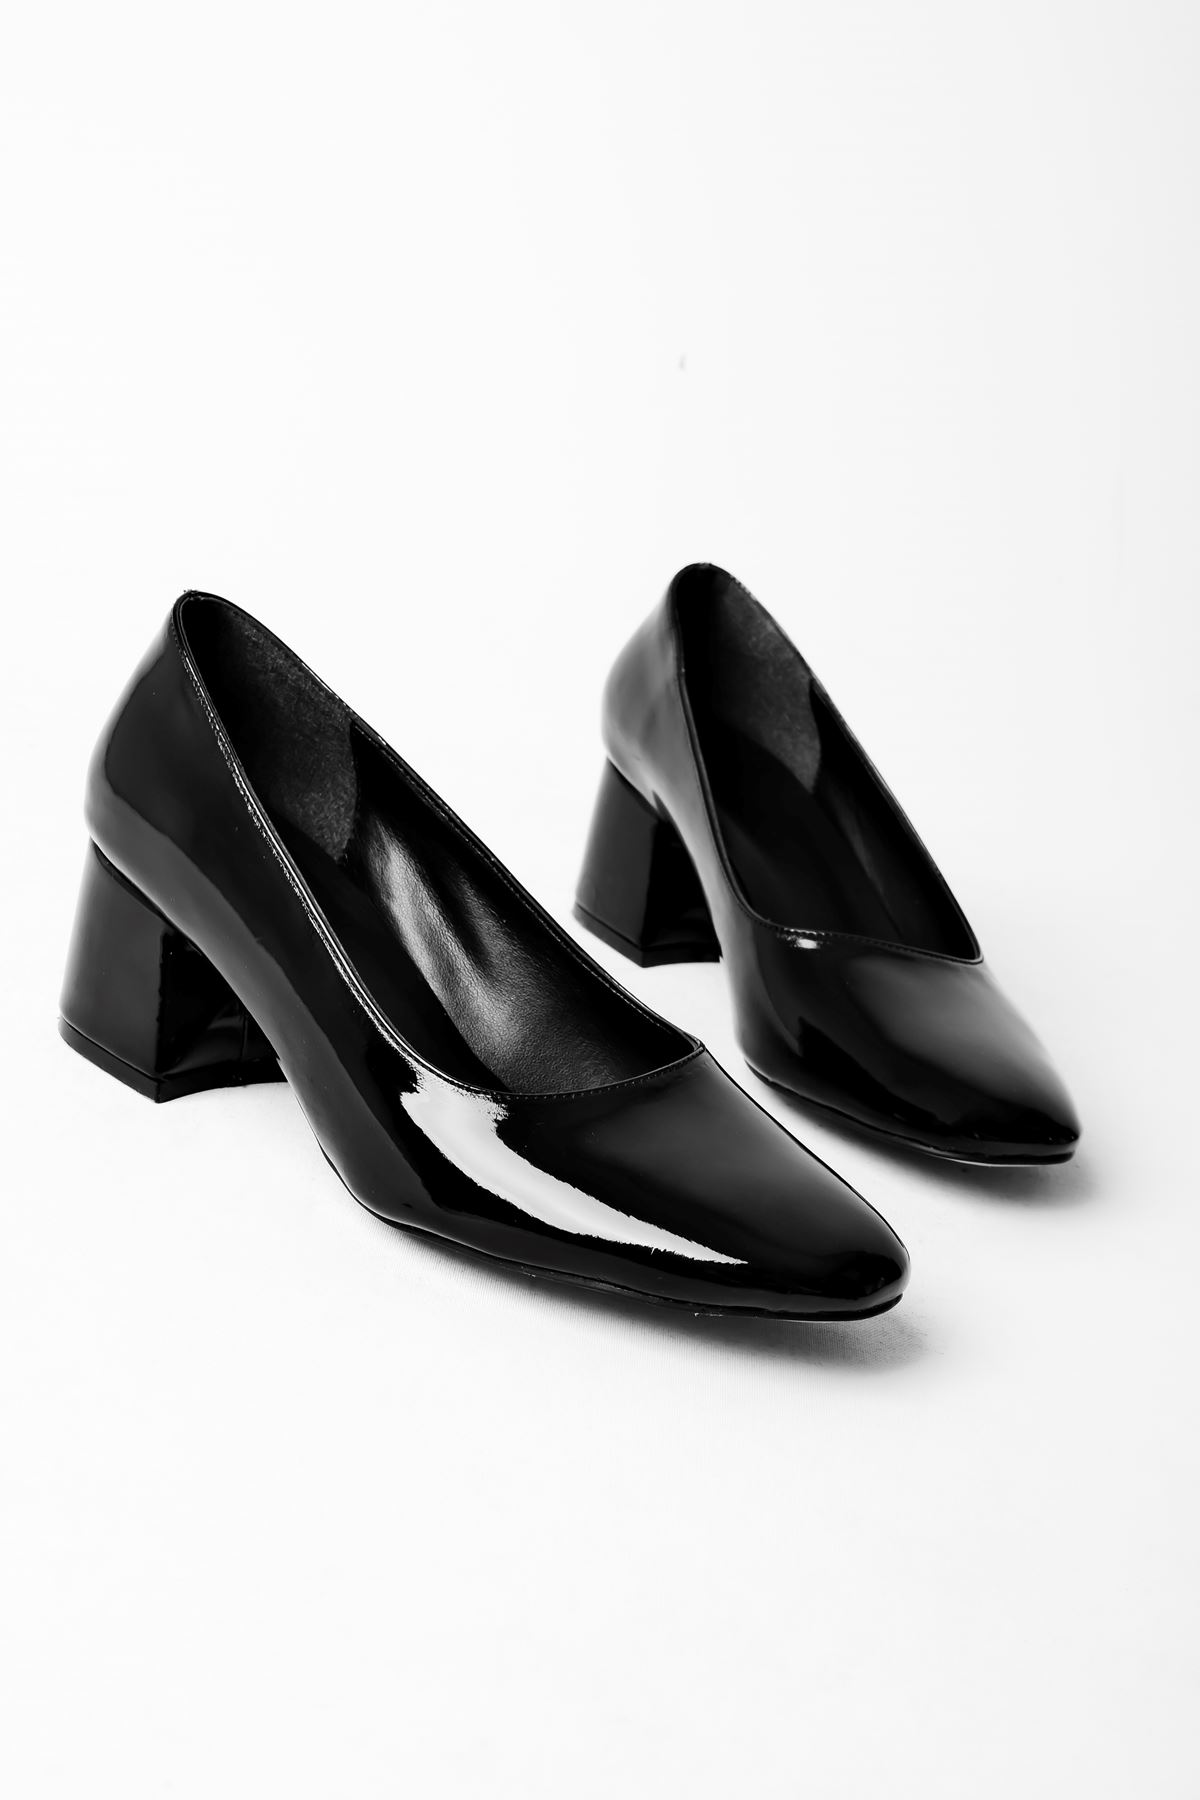 Edna Kadın Topuklu Ayakkabı Yuvarlak Burun-Rugan Siyah